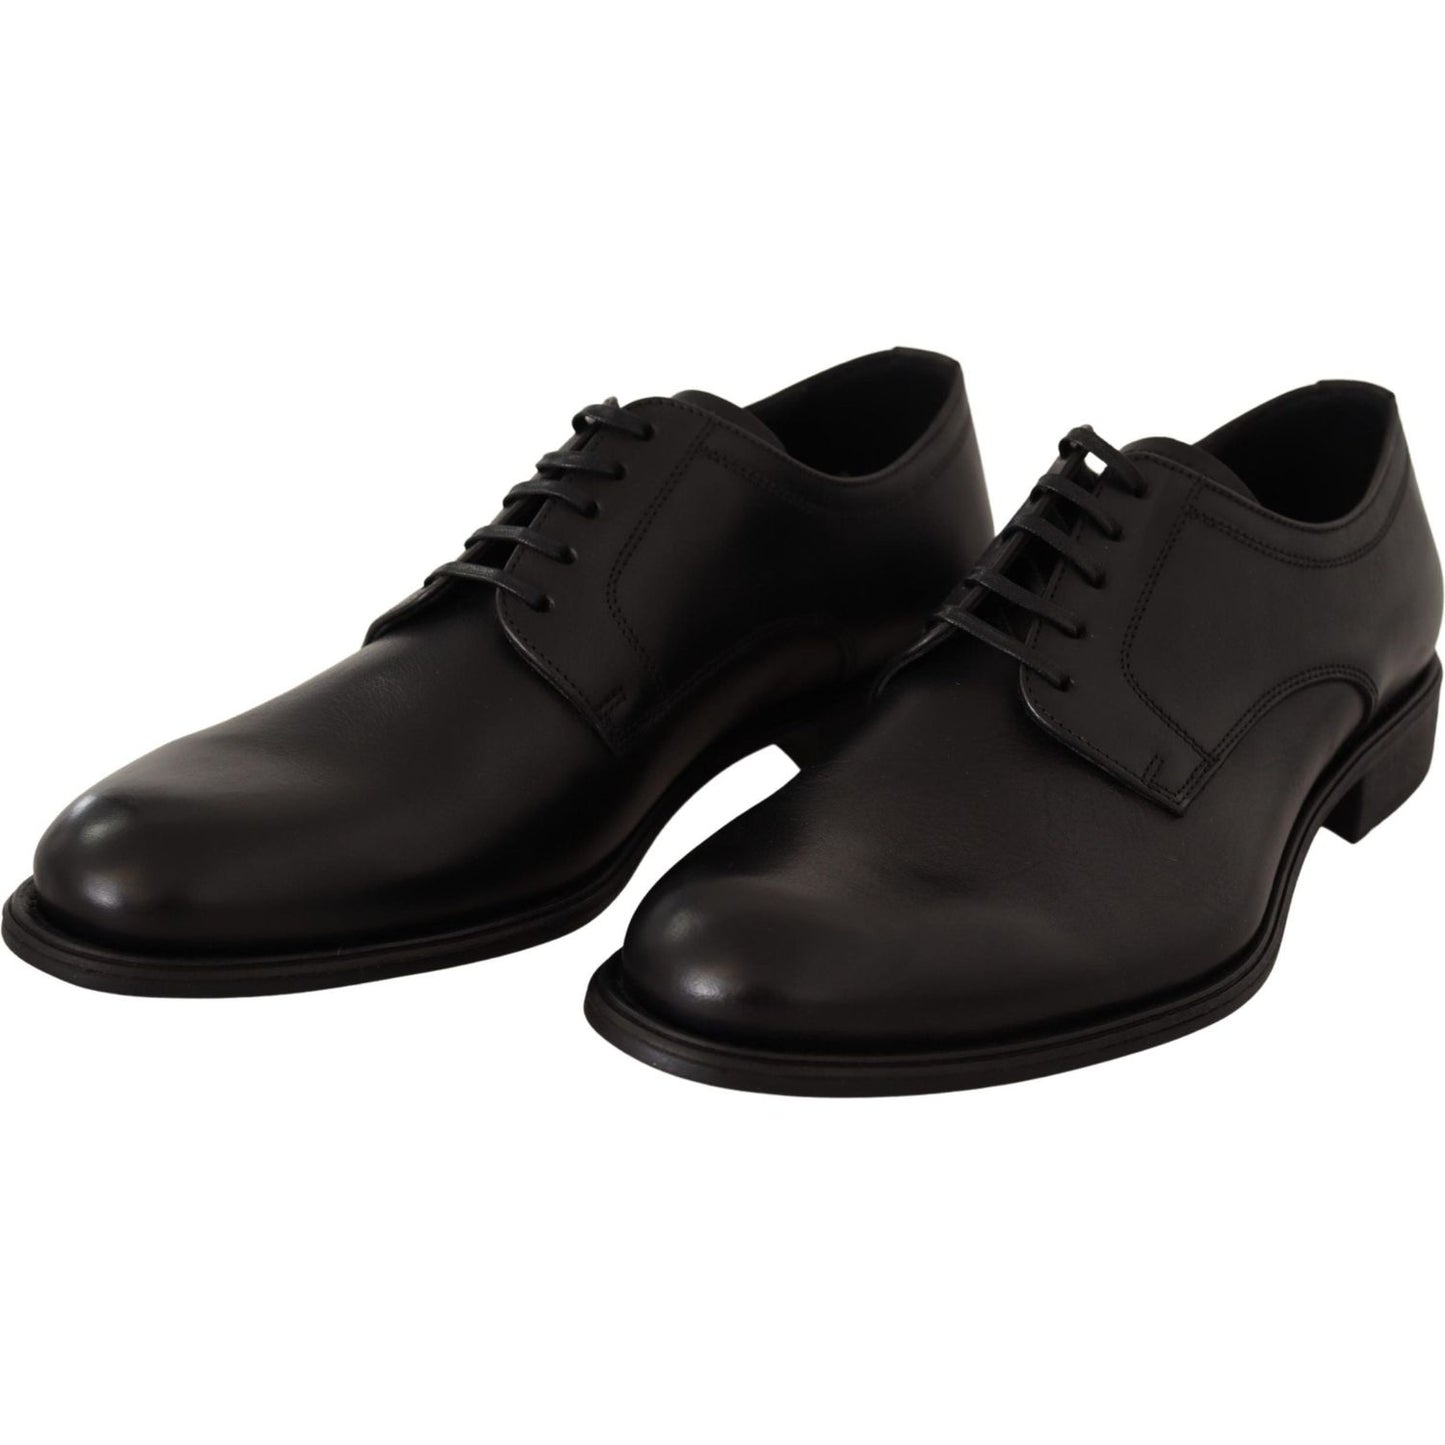 Dolce & Gabbana | Elegant Black Derby Formal Shoes| McRichard Designer Brands   